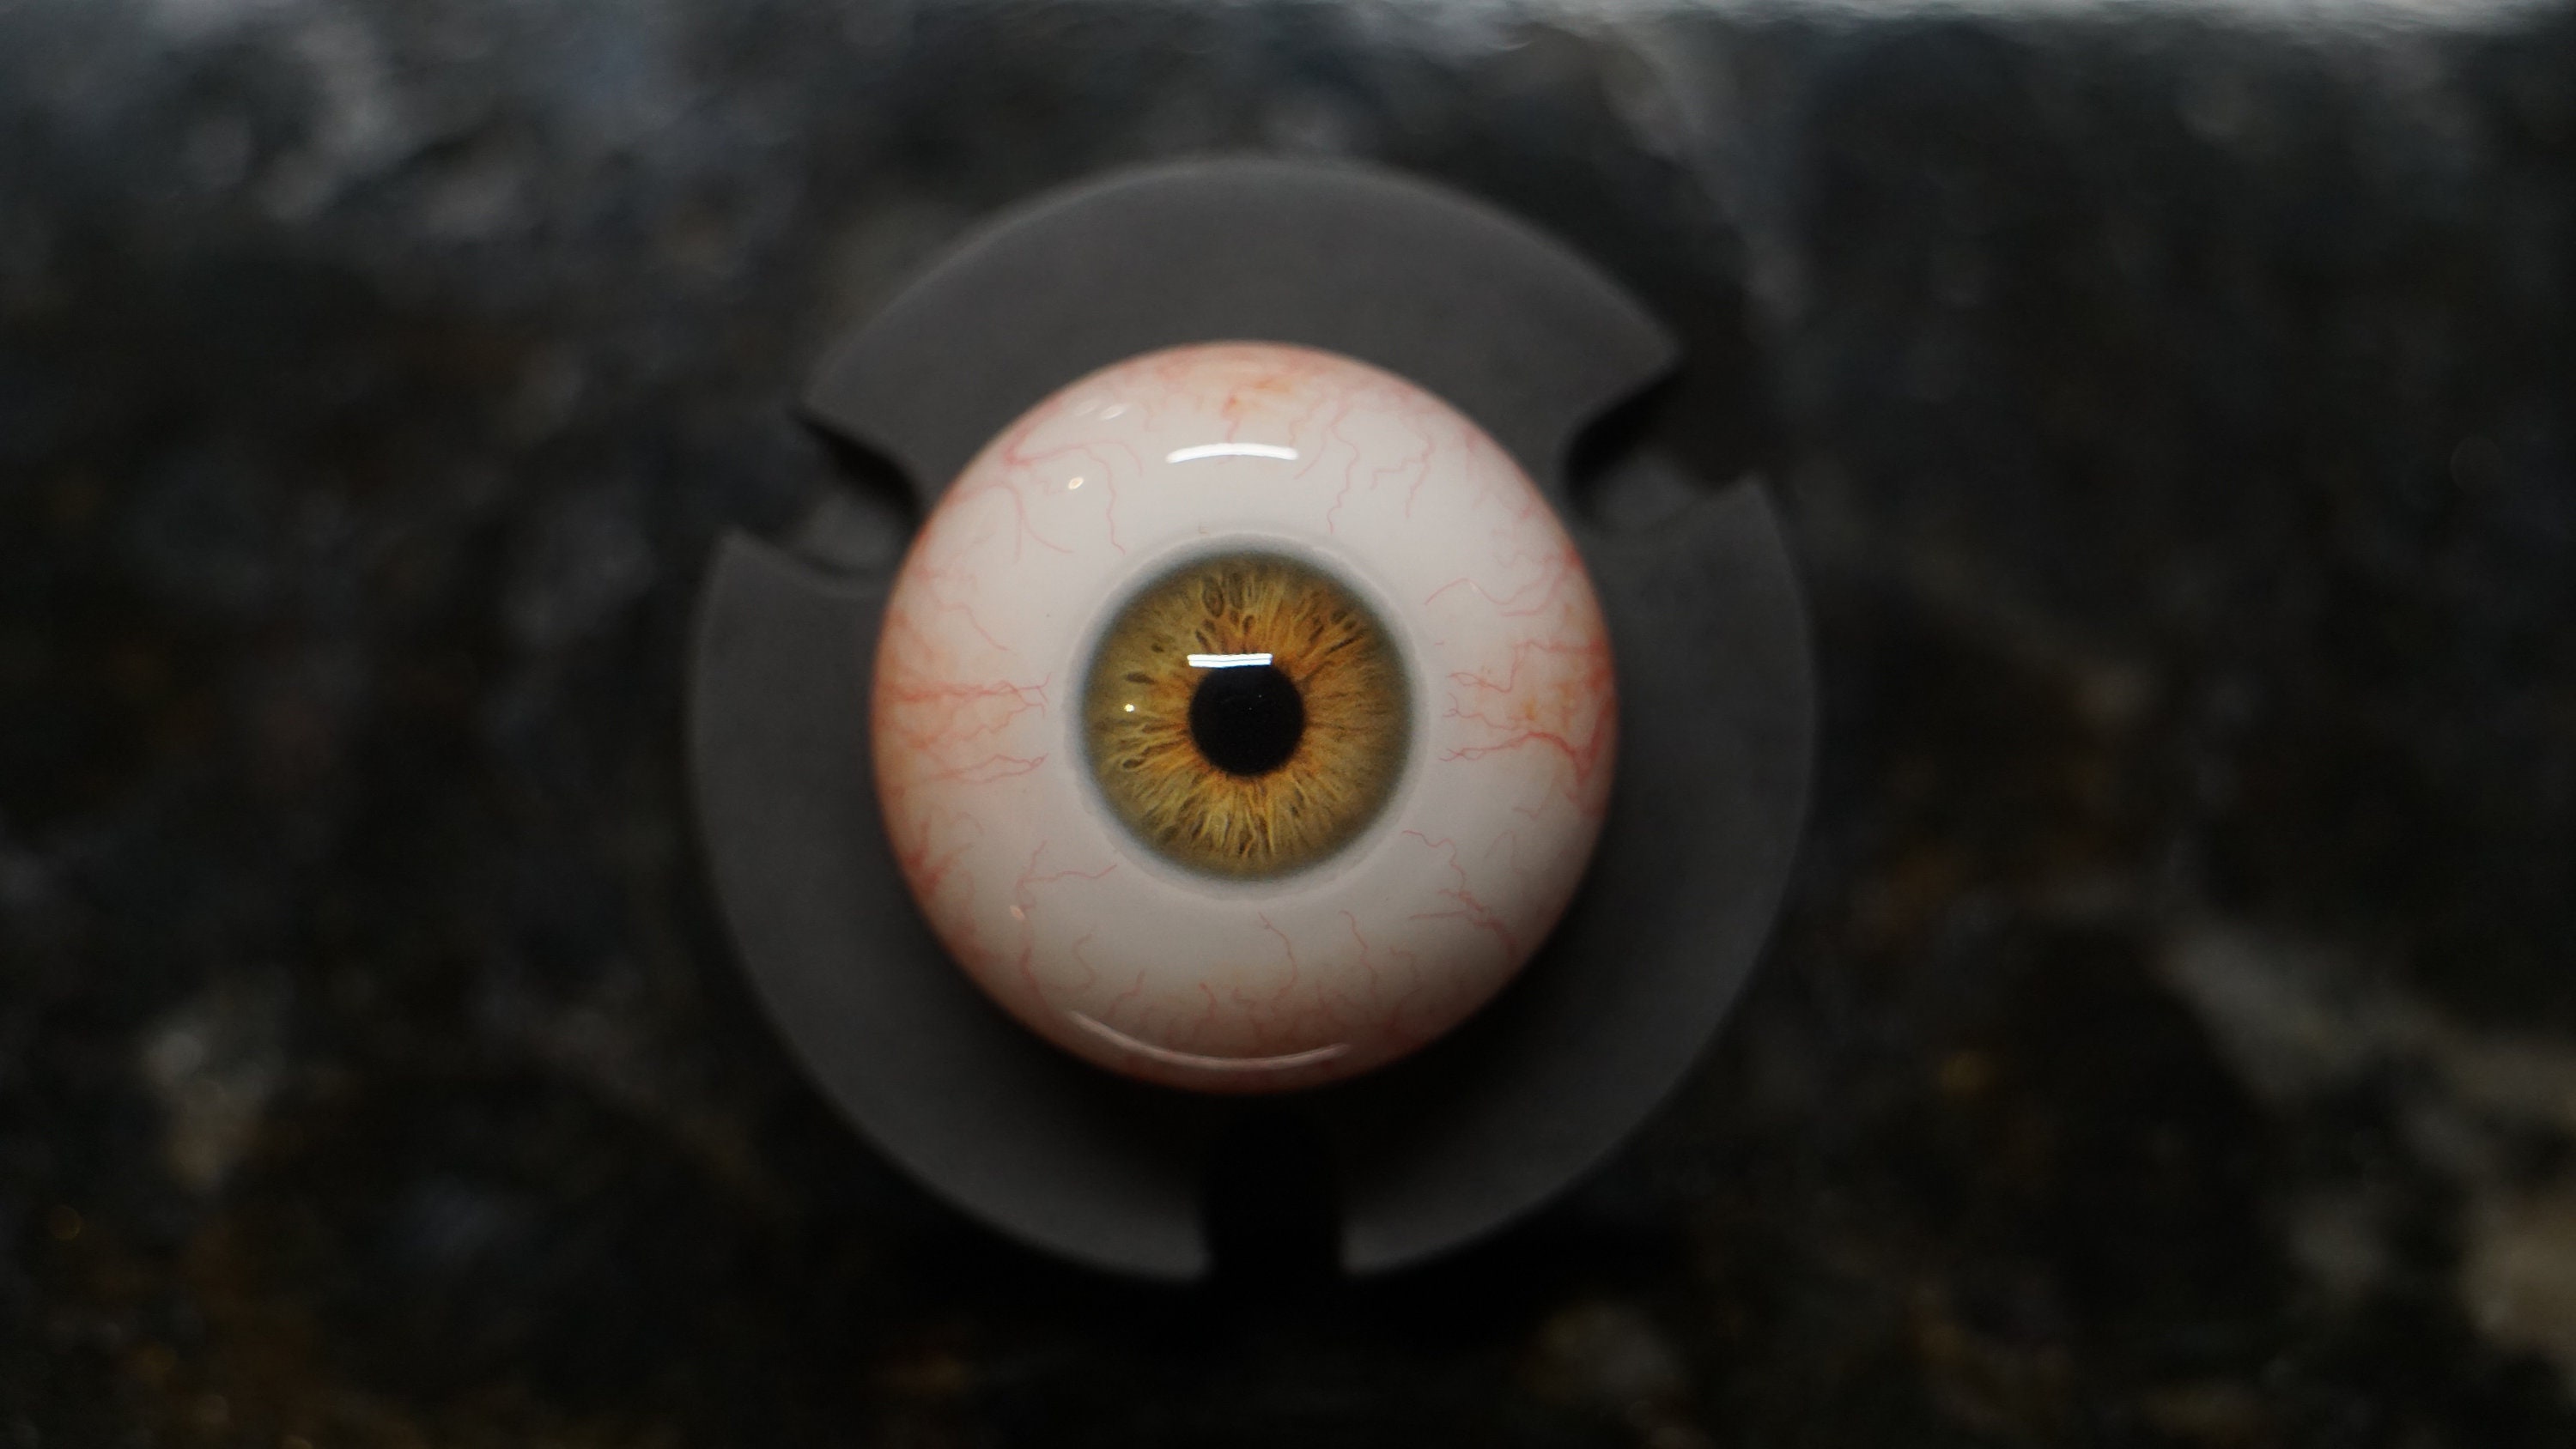 Dream Weaver Eye, Galaxy, Solar System, Eyes, Eye, Dream, Nightmare, Eye  Ball, Fake Eyes, Resin Eyes, Acrylic Eyes, Doll Eyes, BJD